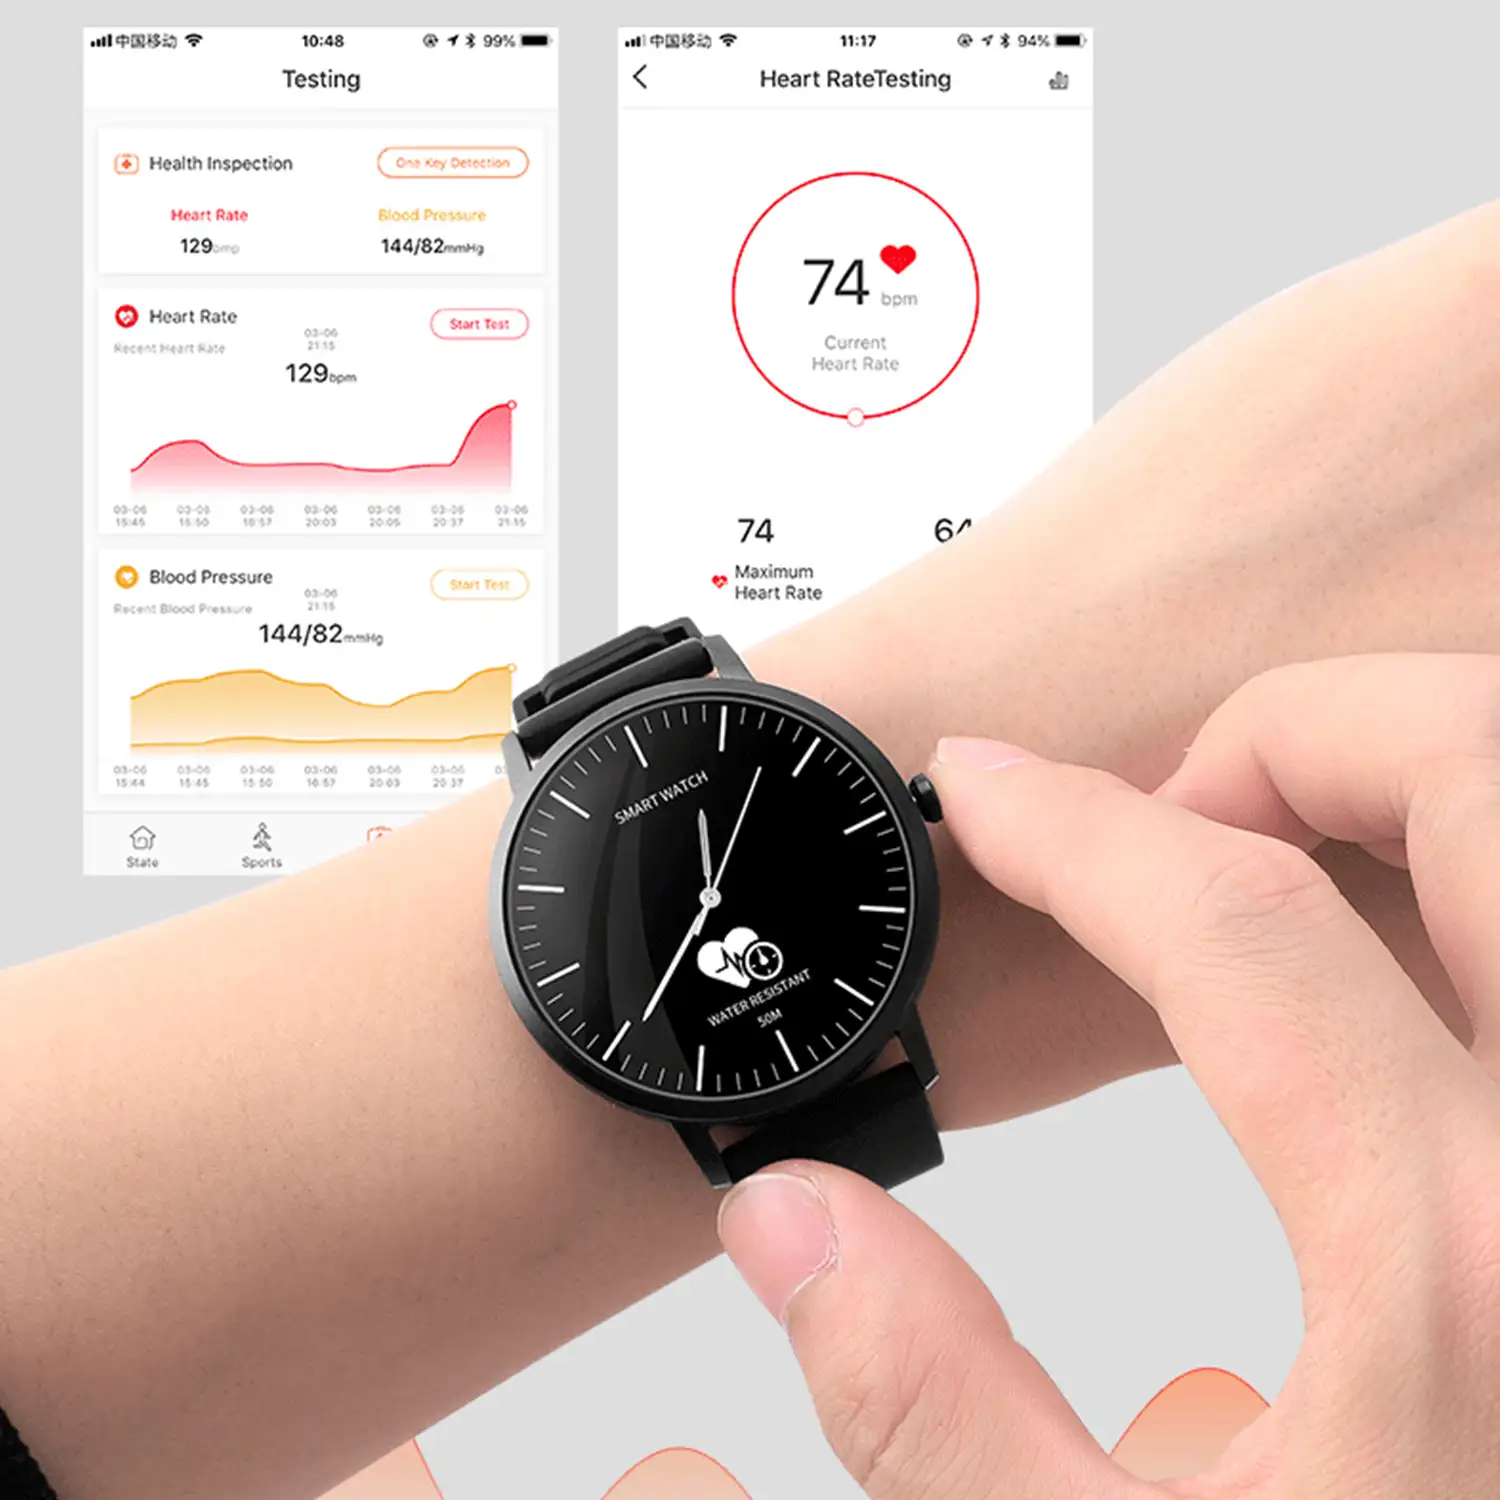 Smartwatch HD06 con mecanismo tradicional de cuarzo + pantalla digital y funciones avanzadas. Podómetro, monitor cardiaco.